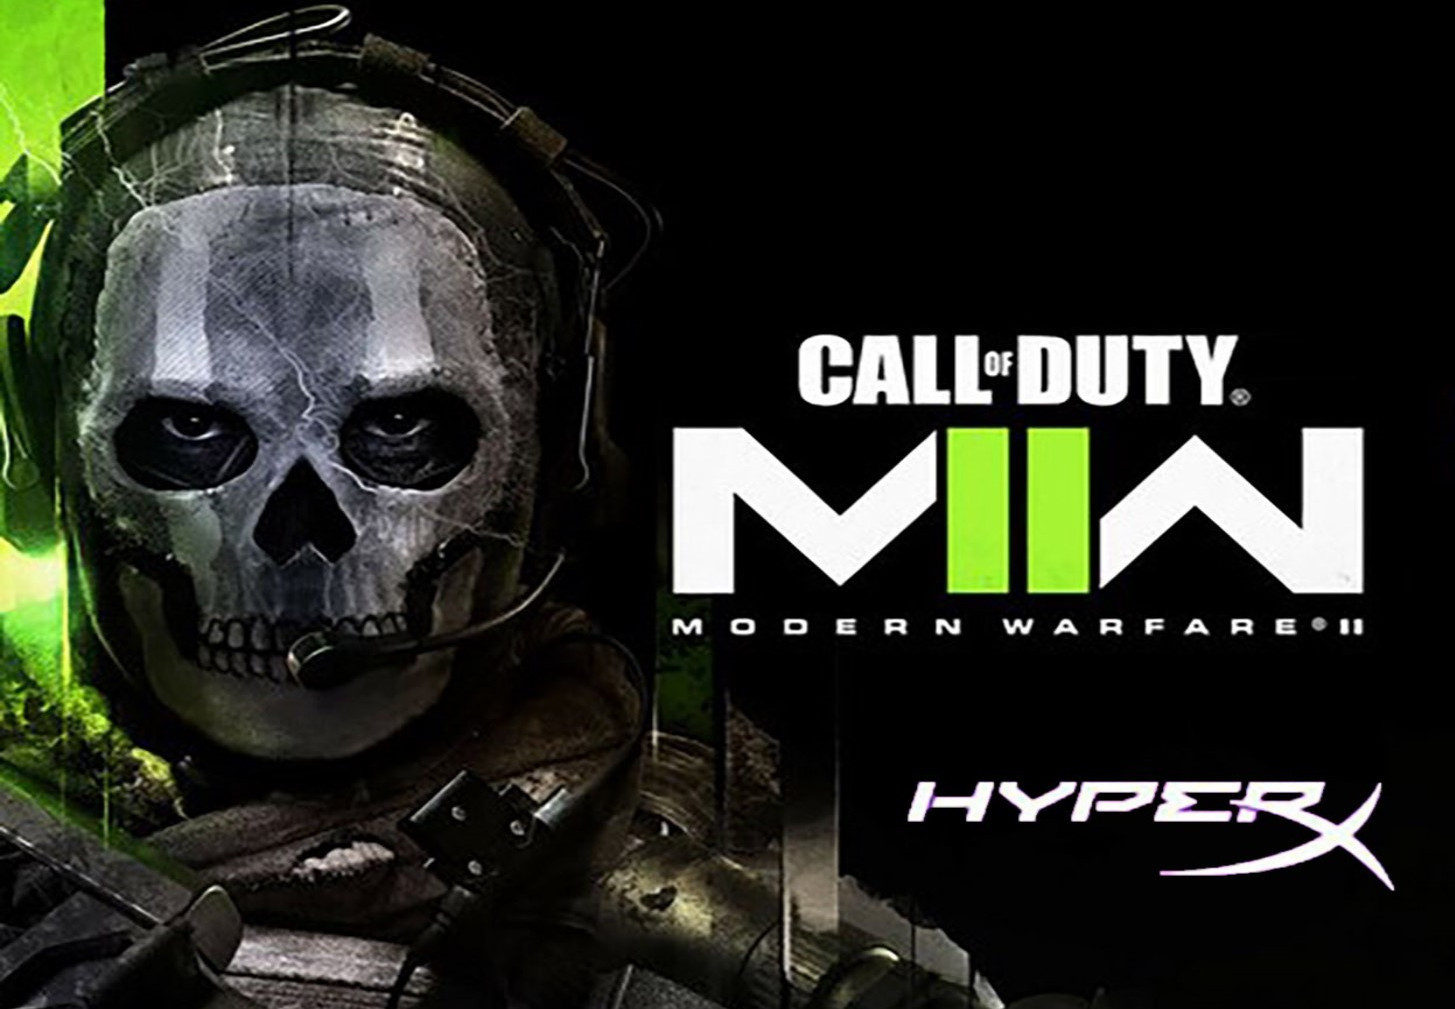 Call of Duty: Modern Warfare II - HyperX  Calling Card +Emblem + Weapon Skin DLC Bundle DLC Digital CD Key